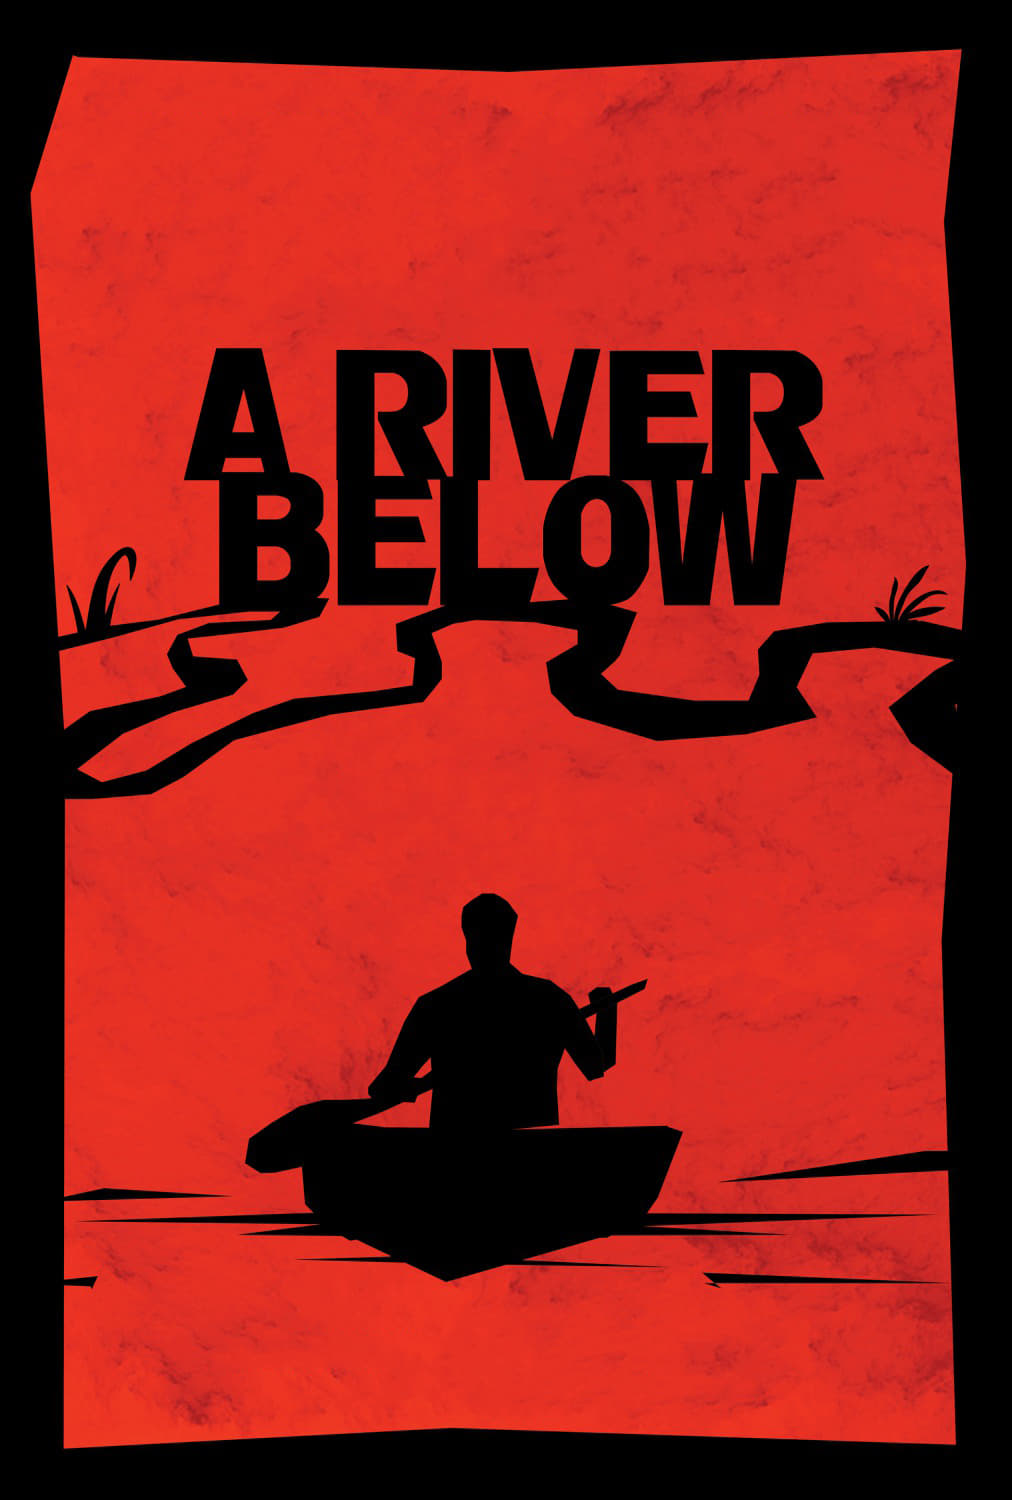 A River Below